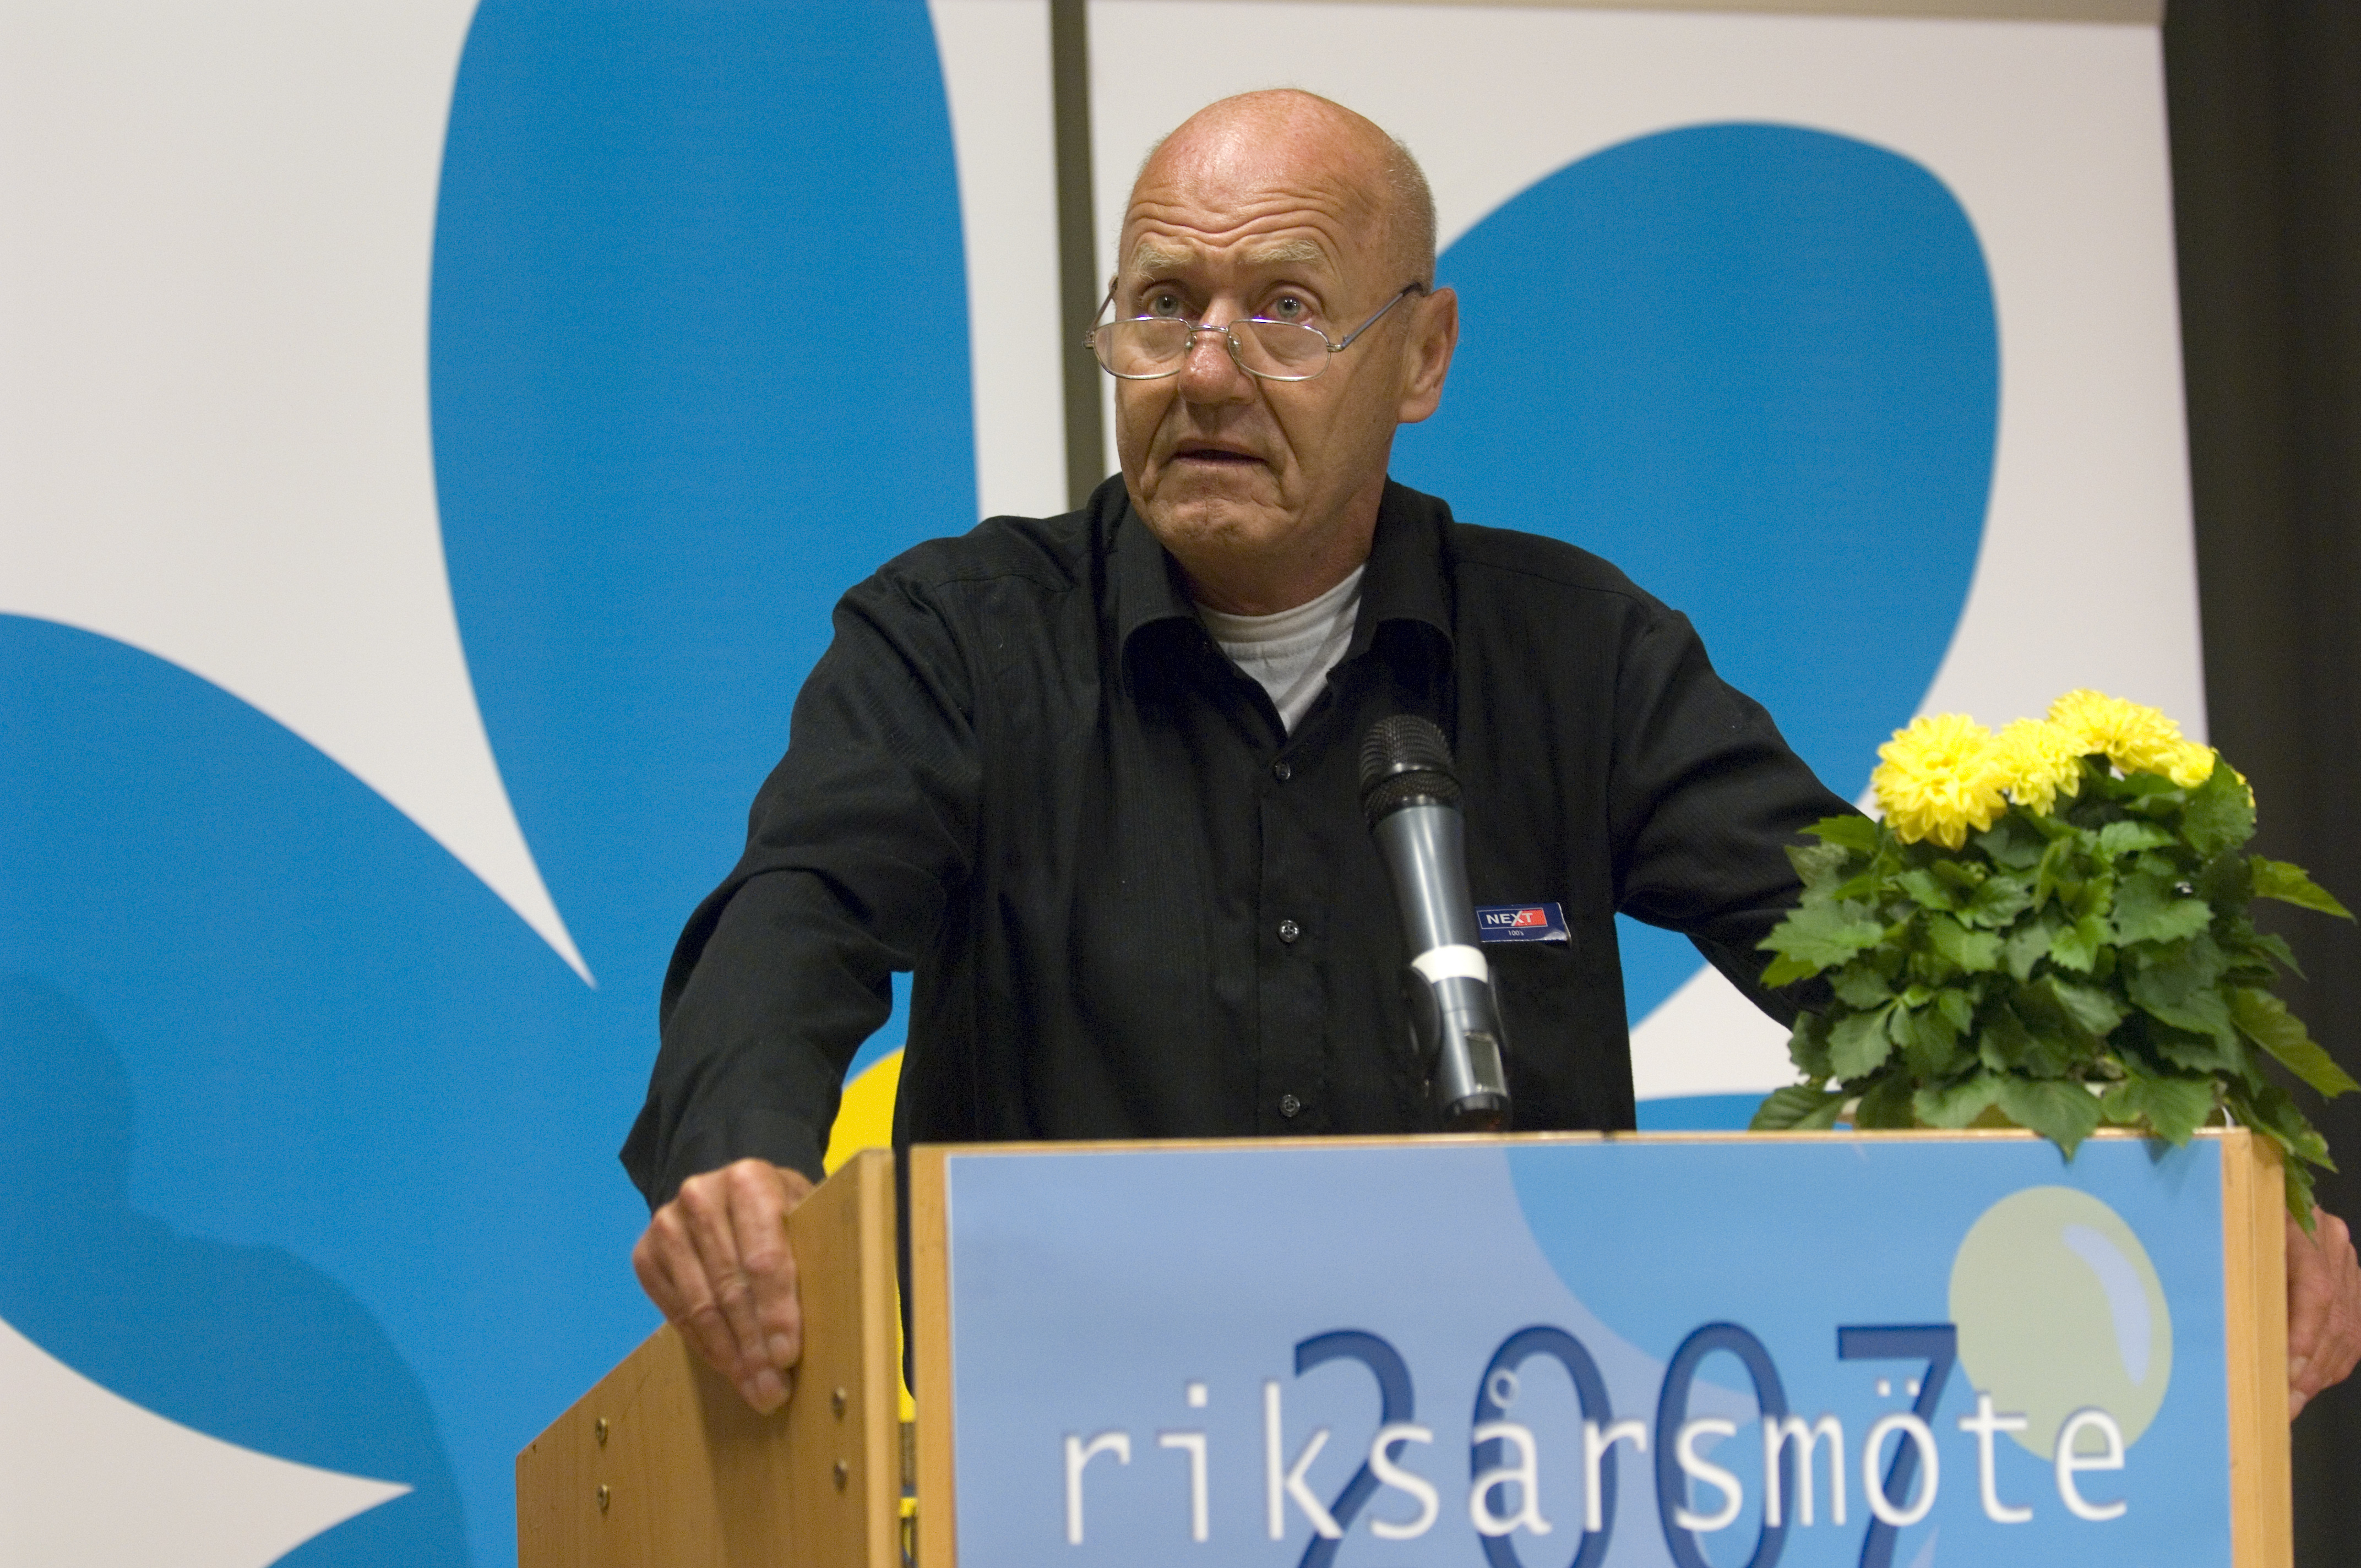 Riksdagsvalet 2010, Avliden, Moderaterna, Avlidit, Död, Sverigedemokraterna, Sten Andersson